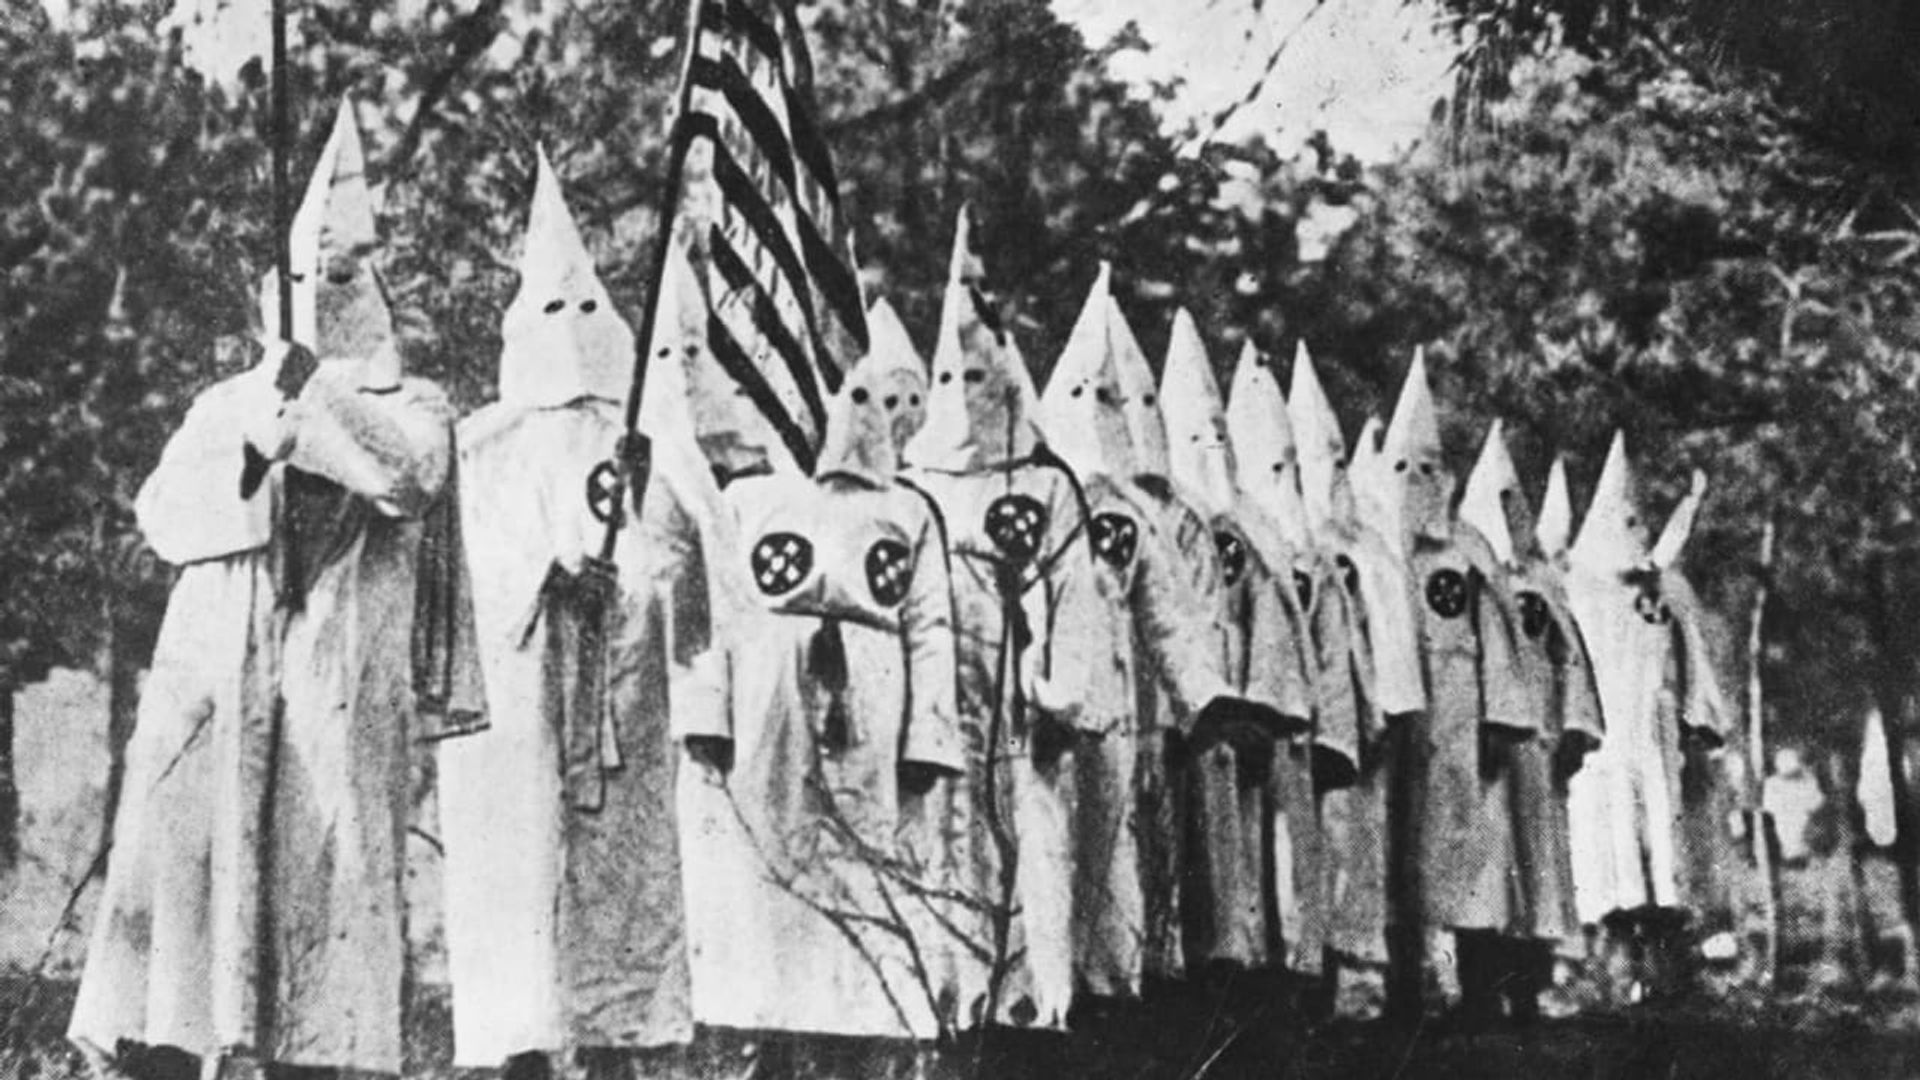 The Ku Klux Klan: A Secret History background